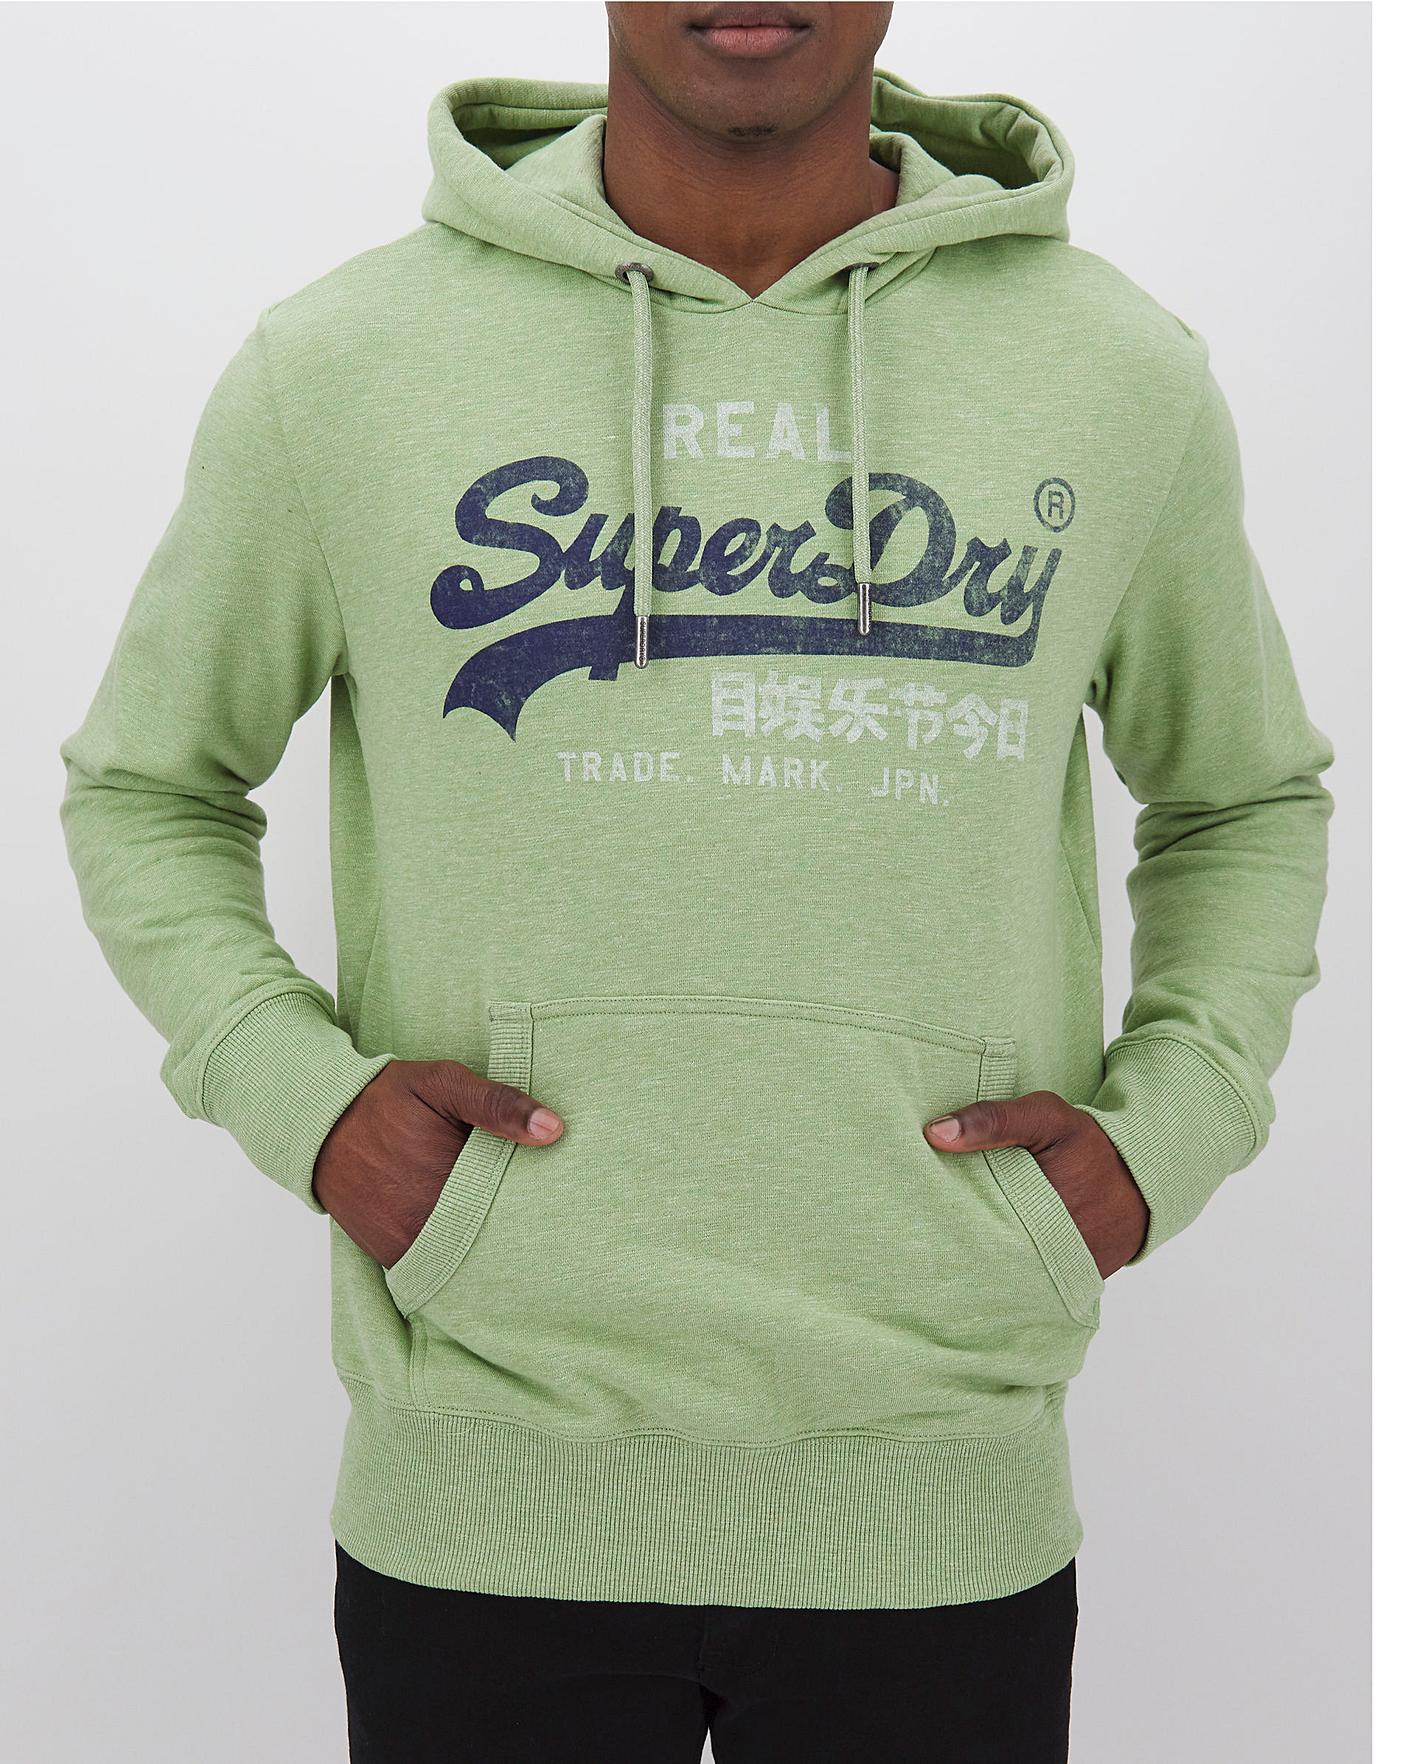 ding Krankzinnigheid Ontslag nemen AJh,superdry hoodies mens sale,hrdsindia.org